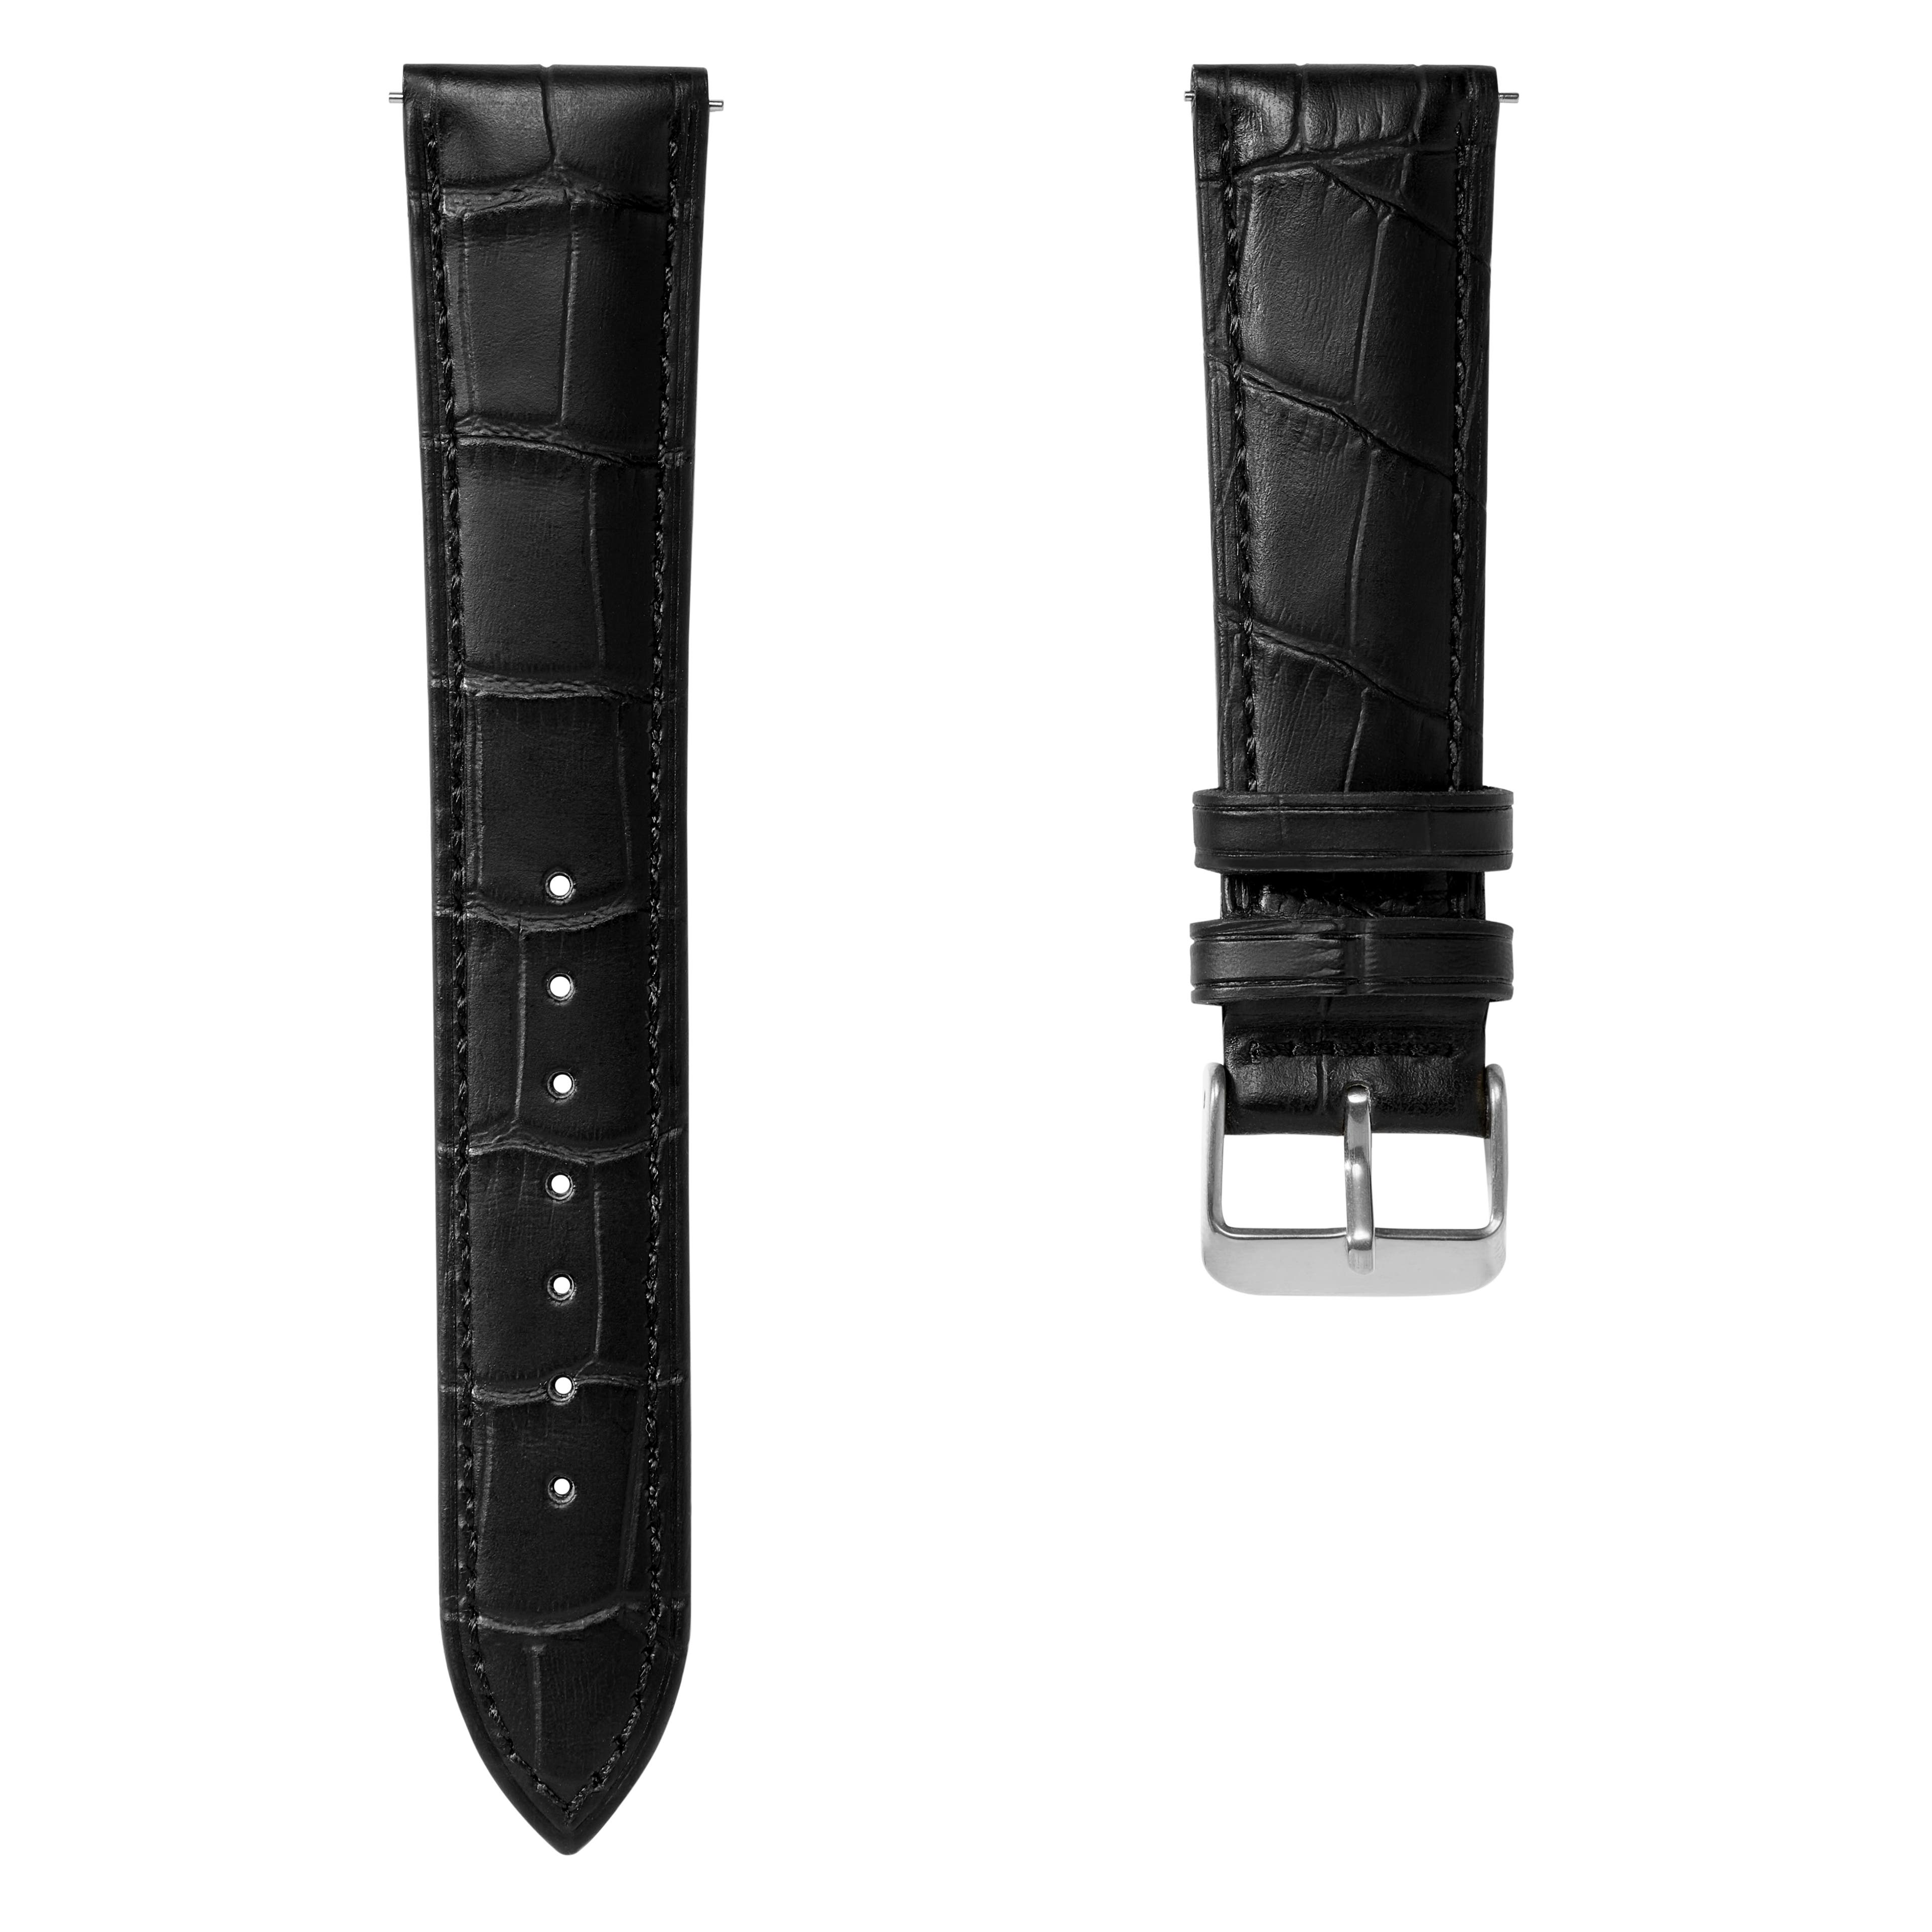 Correa de reloj de cuero negro con relieve de cocodrilo de 18 mm y hebilla plateada - De liberación rápida